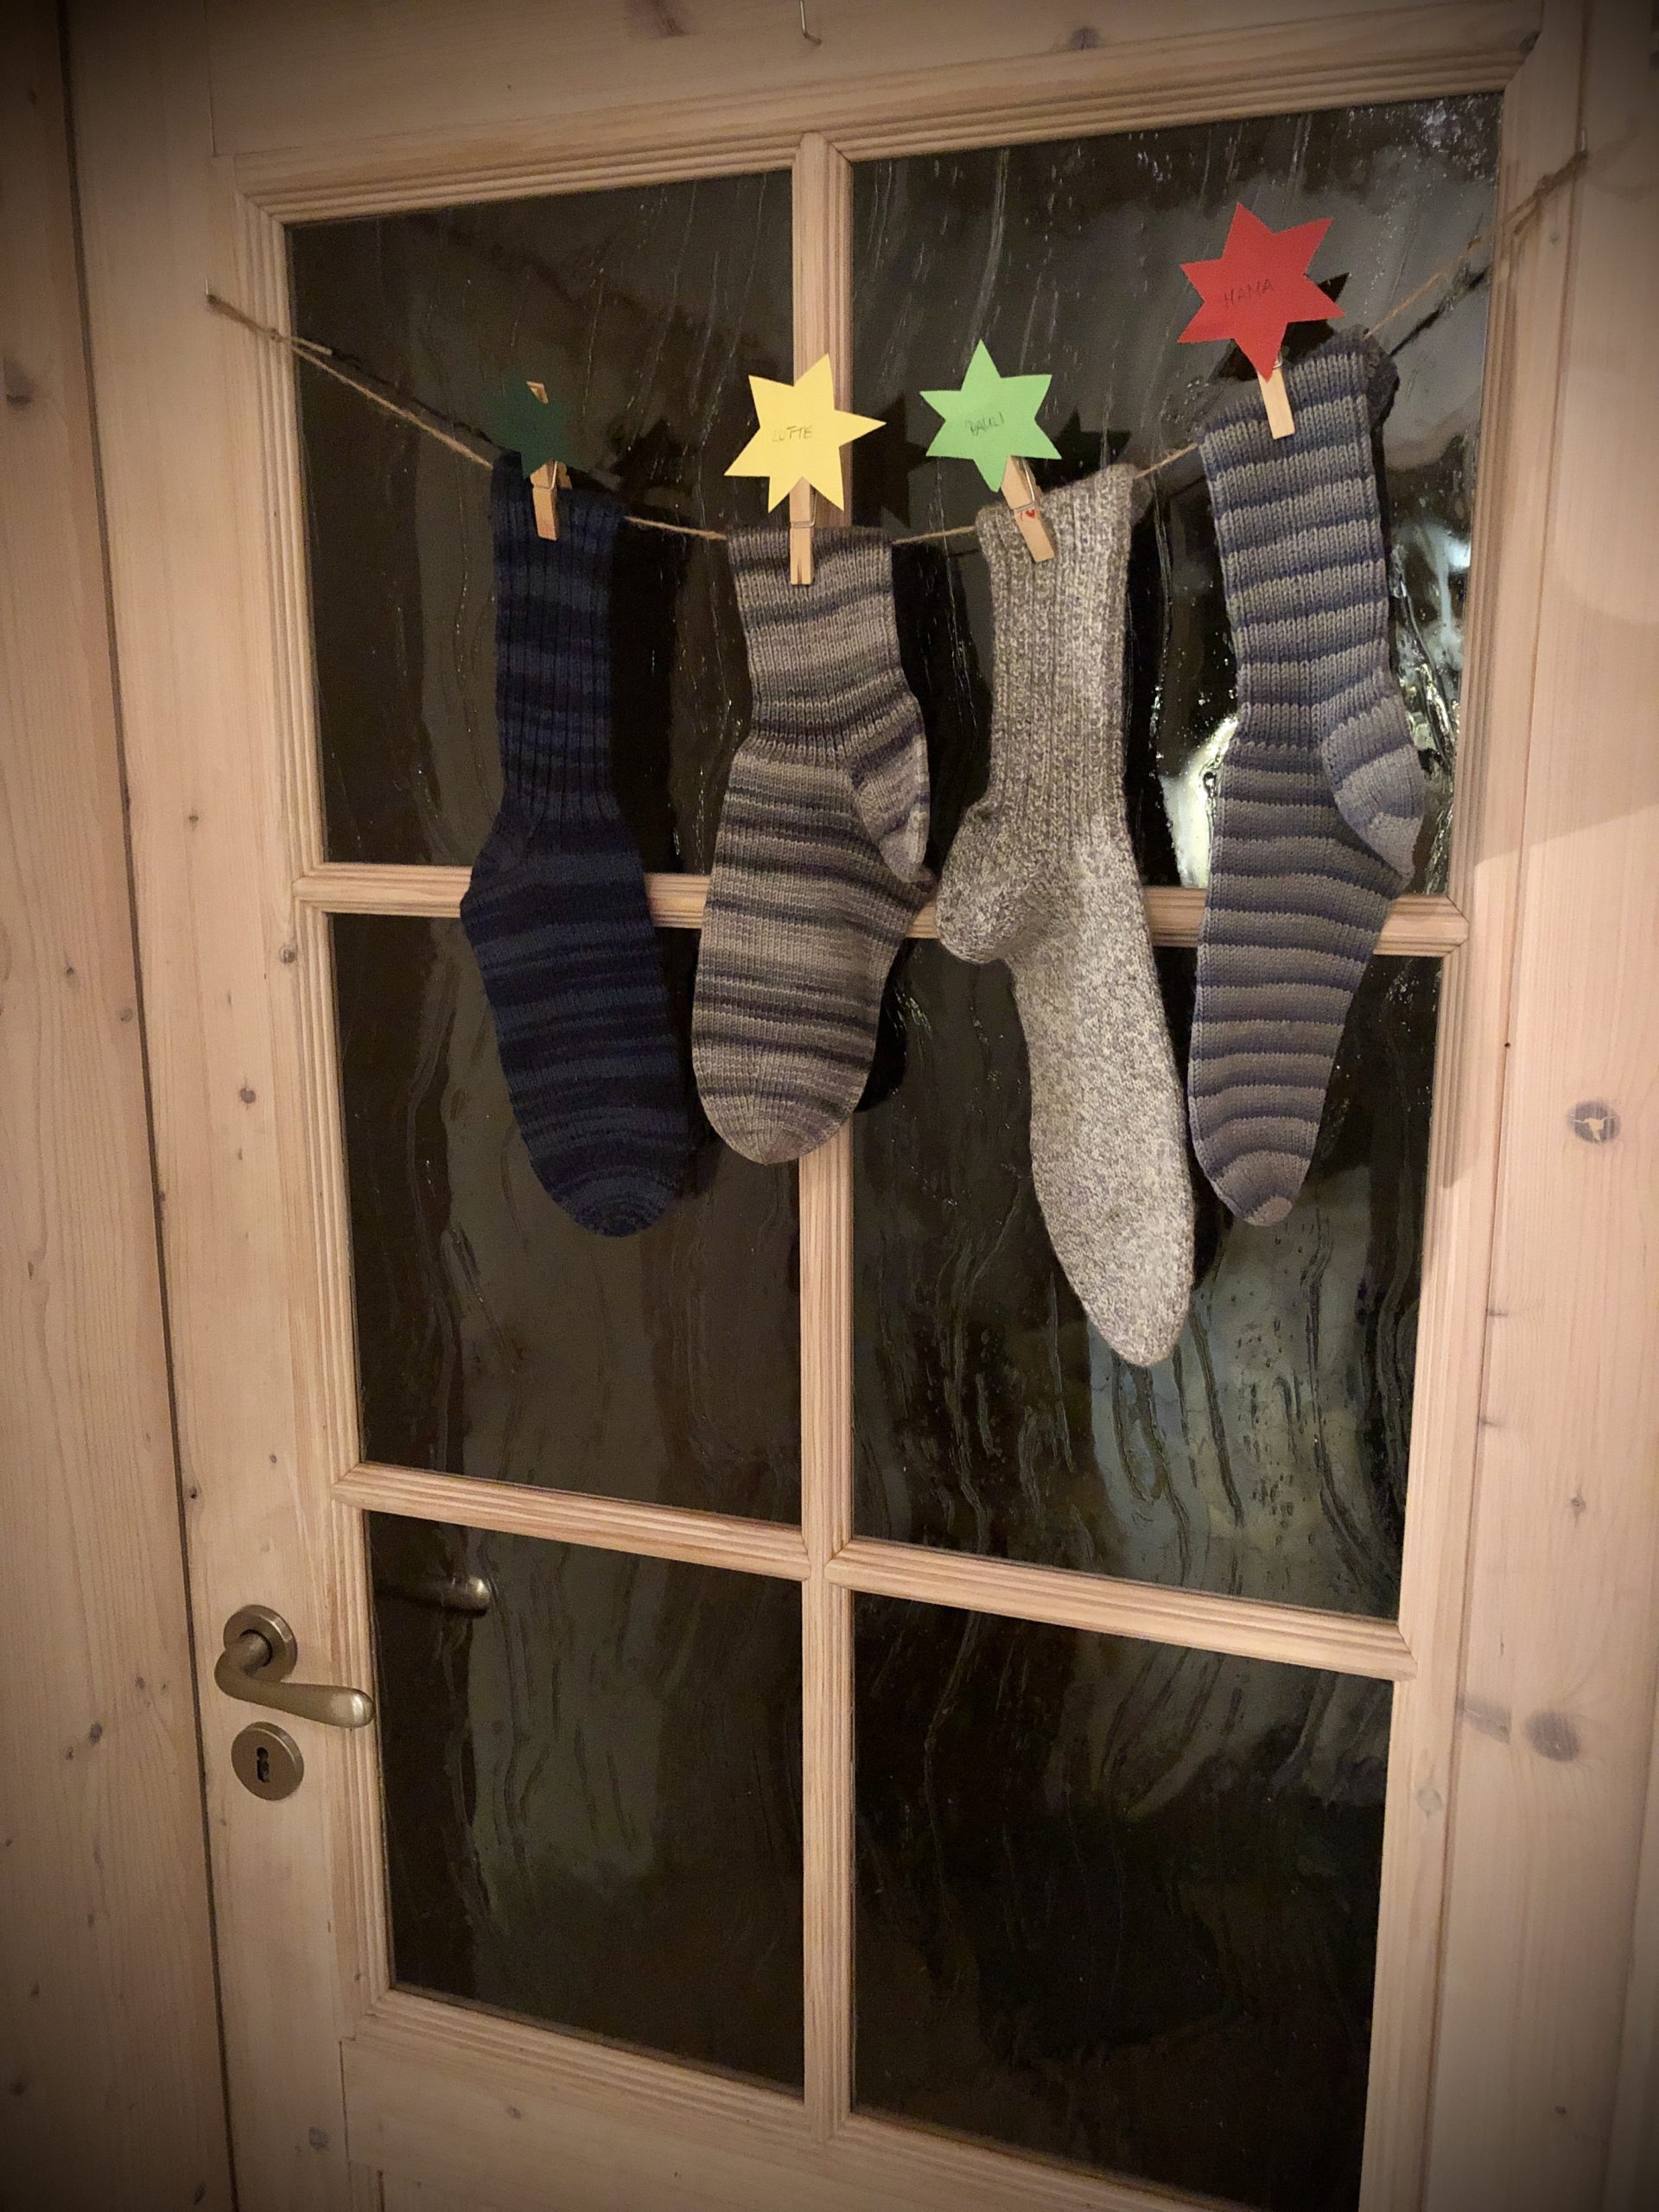 Bild zum Schritt 9 für das Bastel- und DIY-Abenteuer für Kinder: 'Fertig sind die Socken für den Nikolaus.'